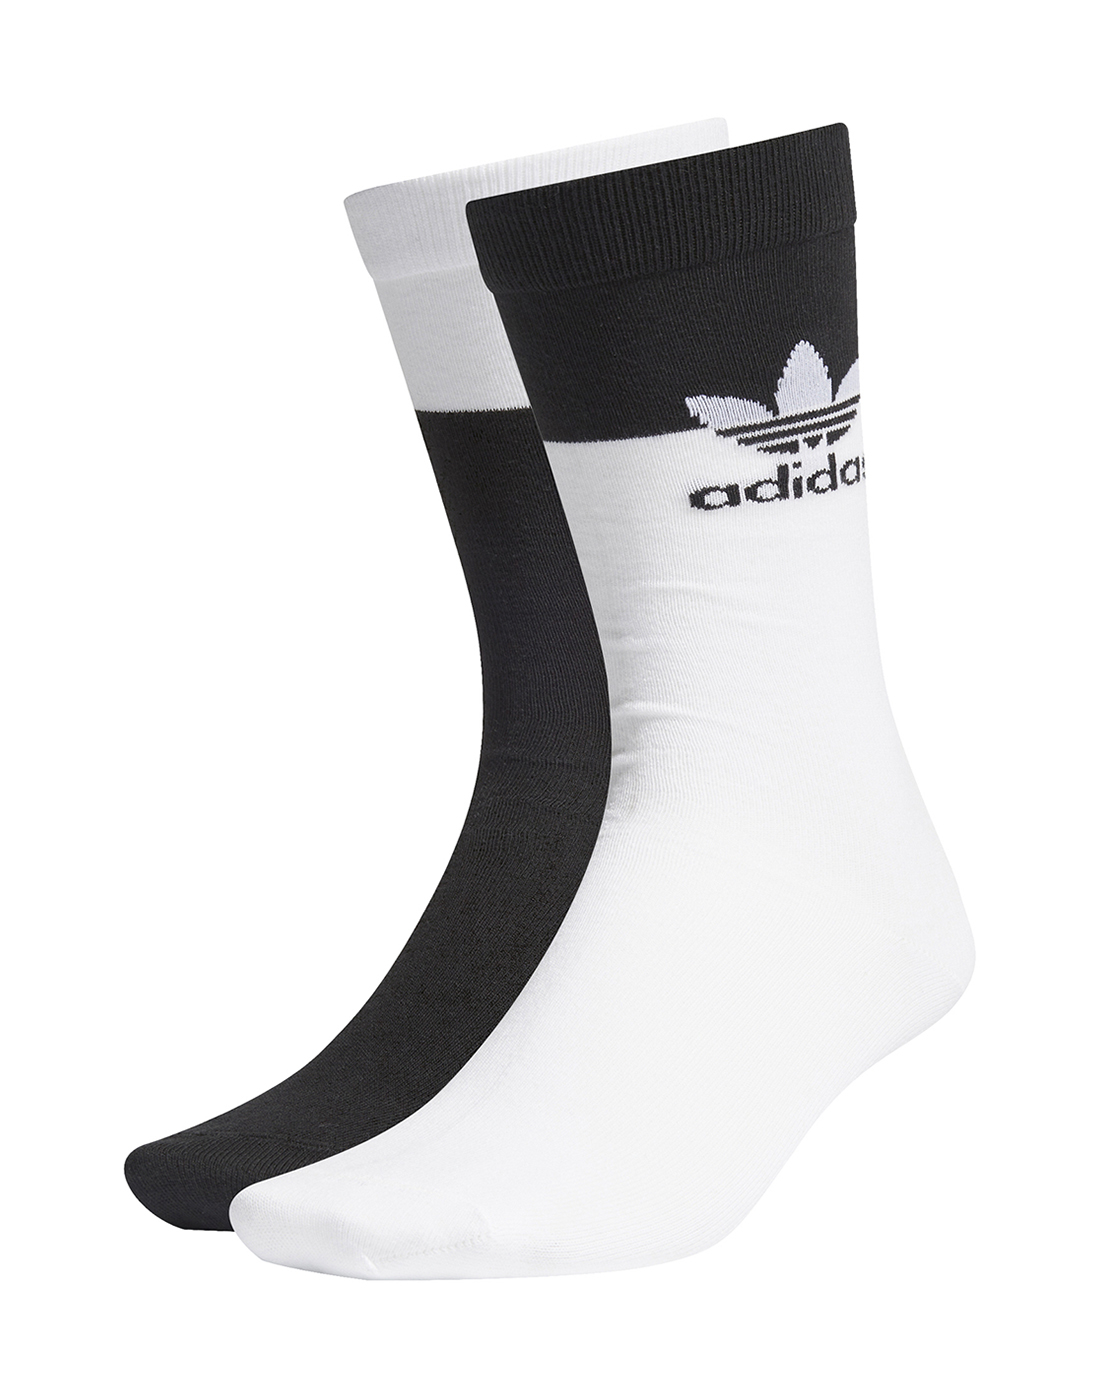 adidas Originals Block Thin 2 Pack Crew Socks - White | Life Style ...